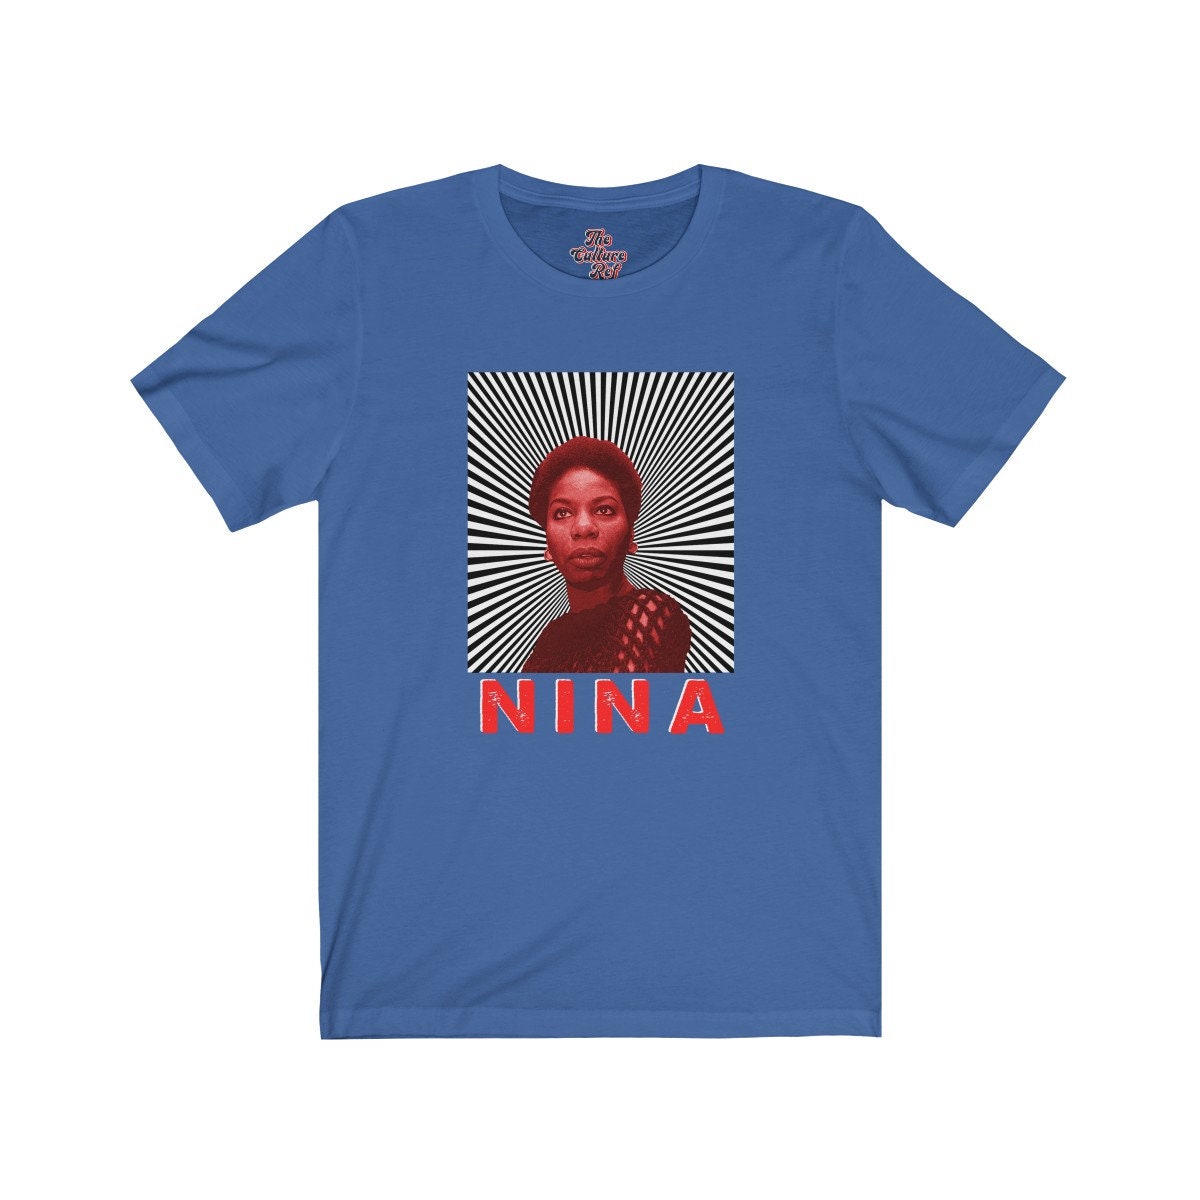 Nina Simone Red Tint with Sunrays T-shirt Unisex Soul Music | Etsy